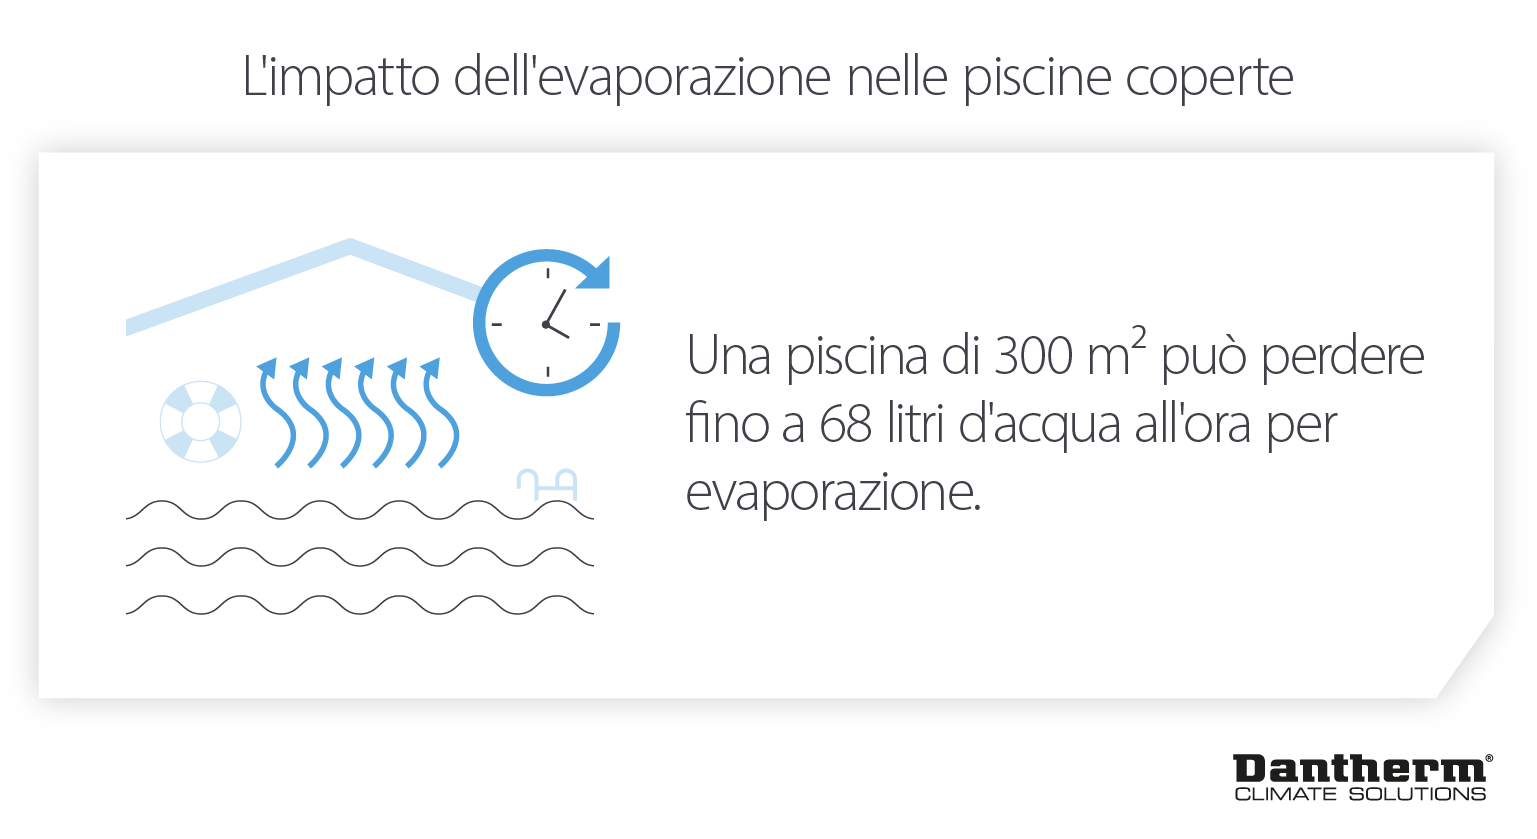 Impatto dell'evaporazione dell'acqua dalle piscine coperte: nei centri ricreativi si perdono fino a 68 litri all'ora - Infografica